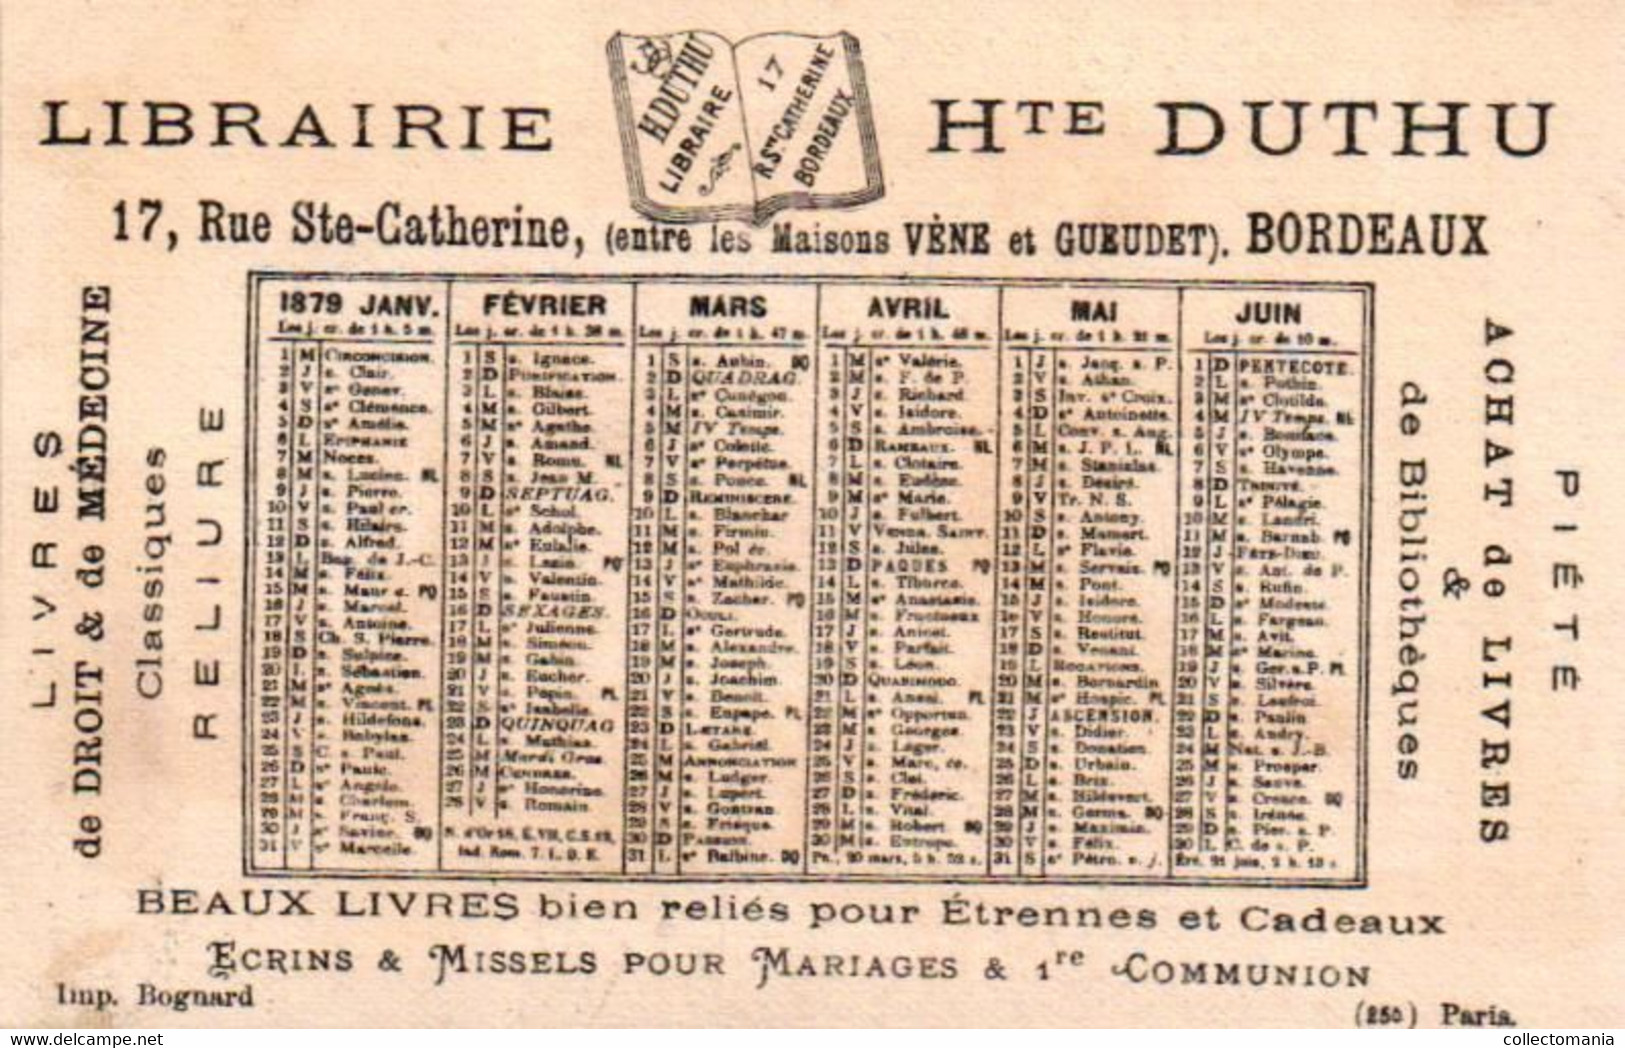 4 calendriers  1879  Libraire Hte Duthu  Livres de Médicine Bordeaux Madame Gregoire Dagobert   Litho Bognard